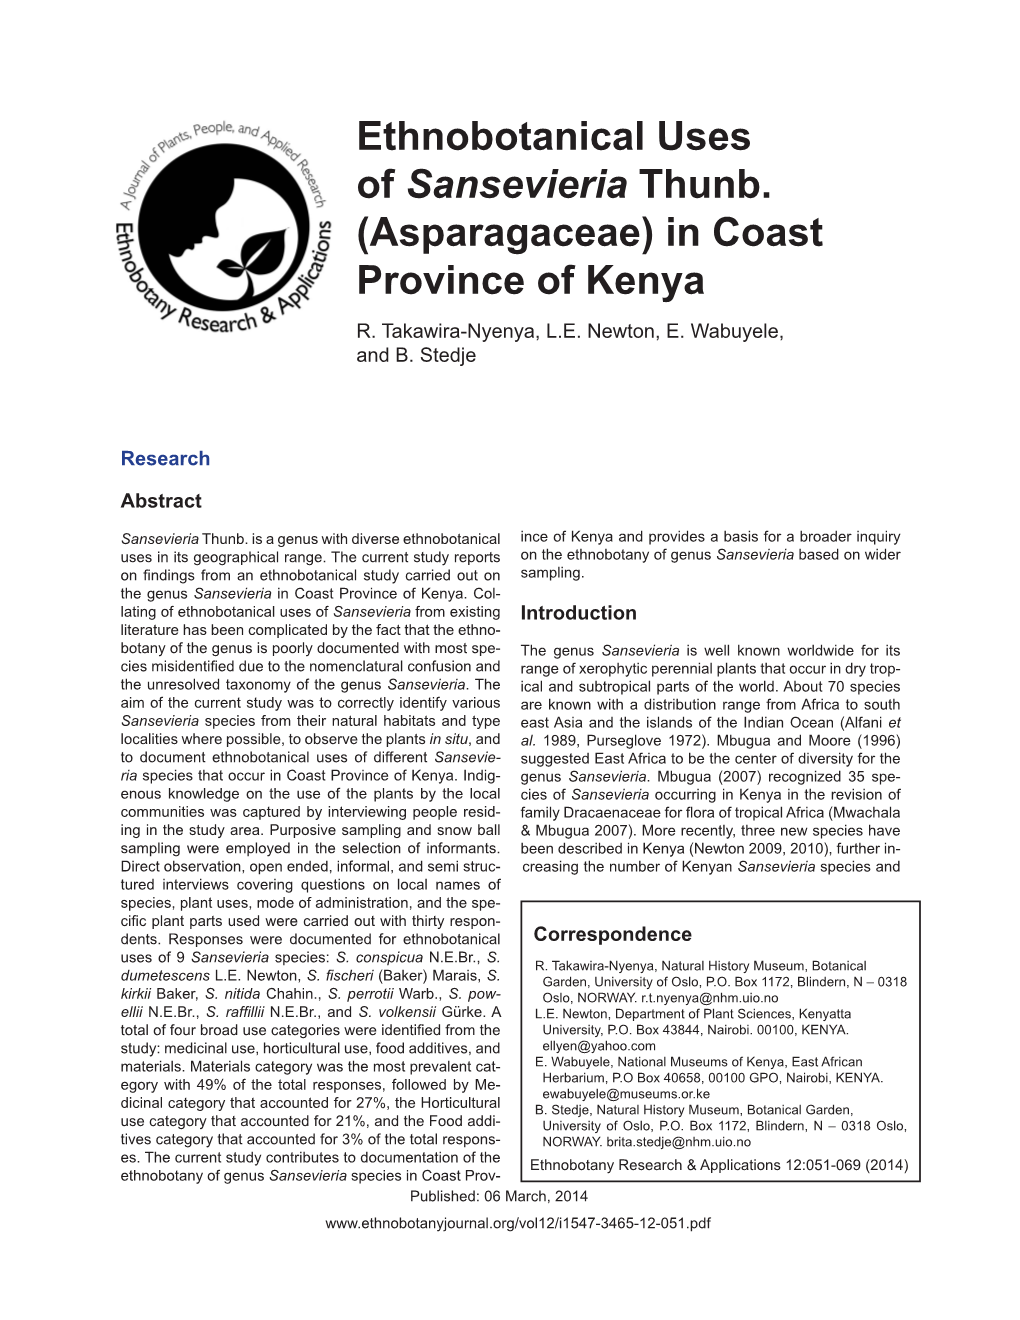 Ethnobotanical Uses of Sansevieria Thunb. (Asparagaceae) in Coast Province of Kenya R